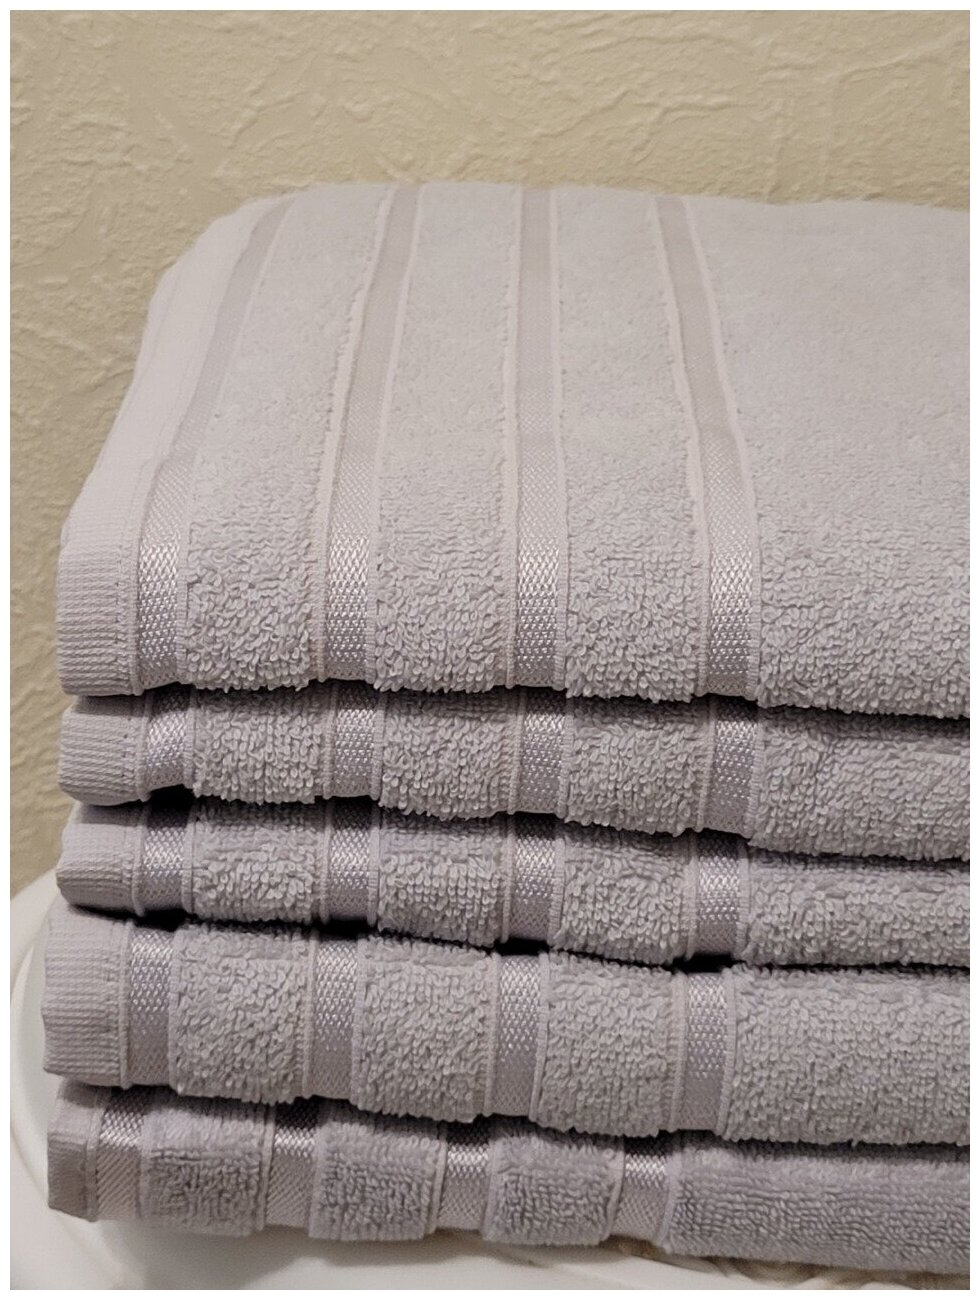 Полотенце турецкого производство 100% хлопок полотенце имеет оптимальную плотность 450 гр